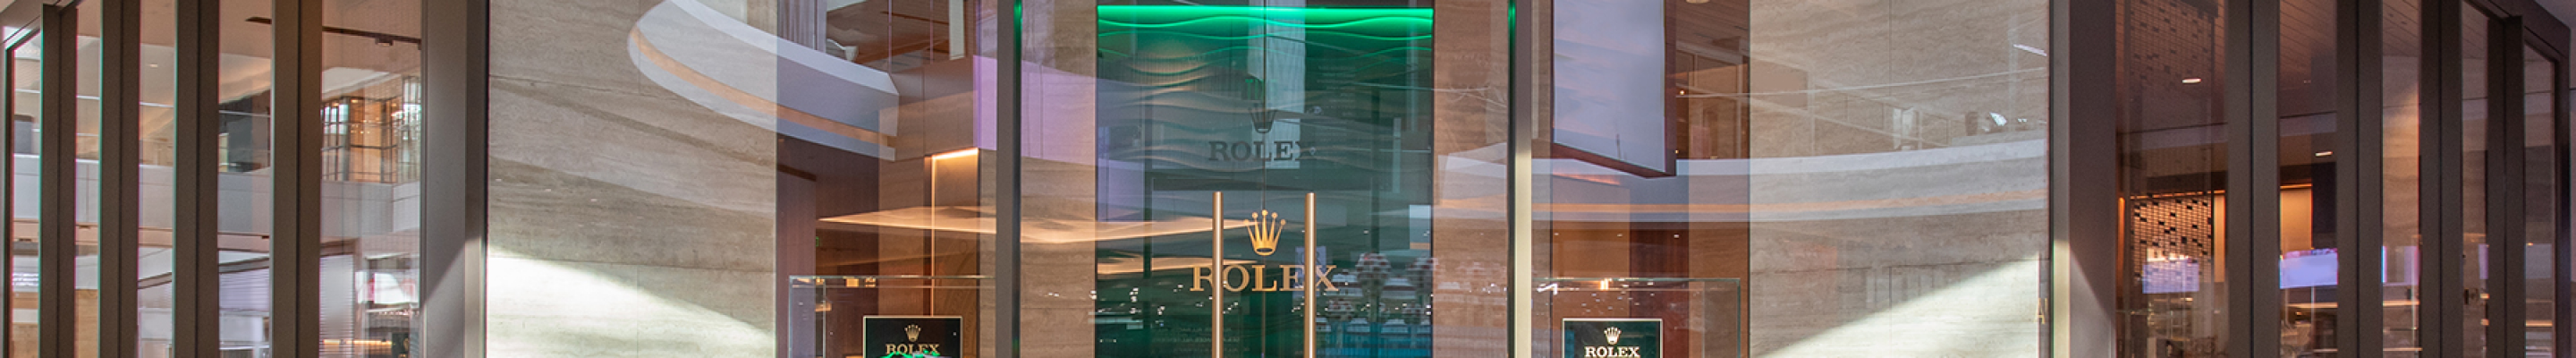 Rolex Storefront at J. Licht & Sons